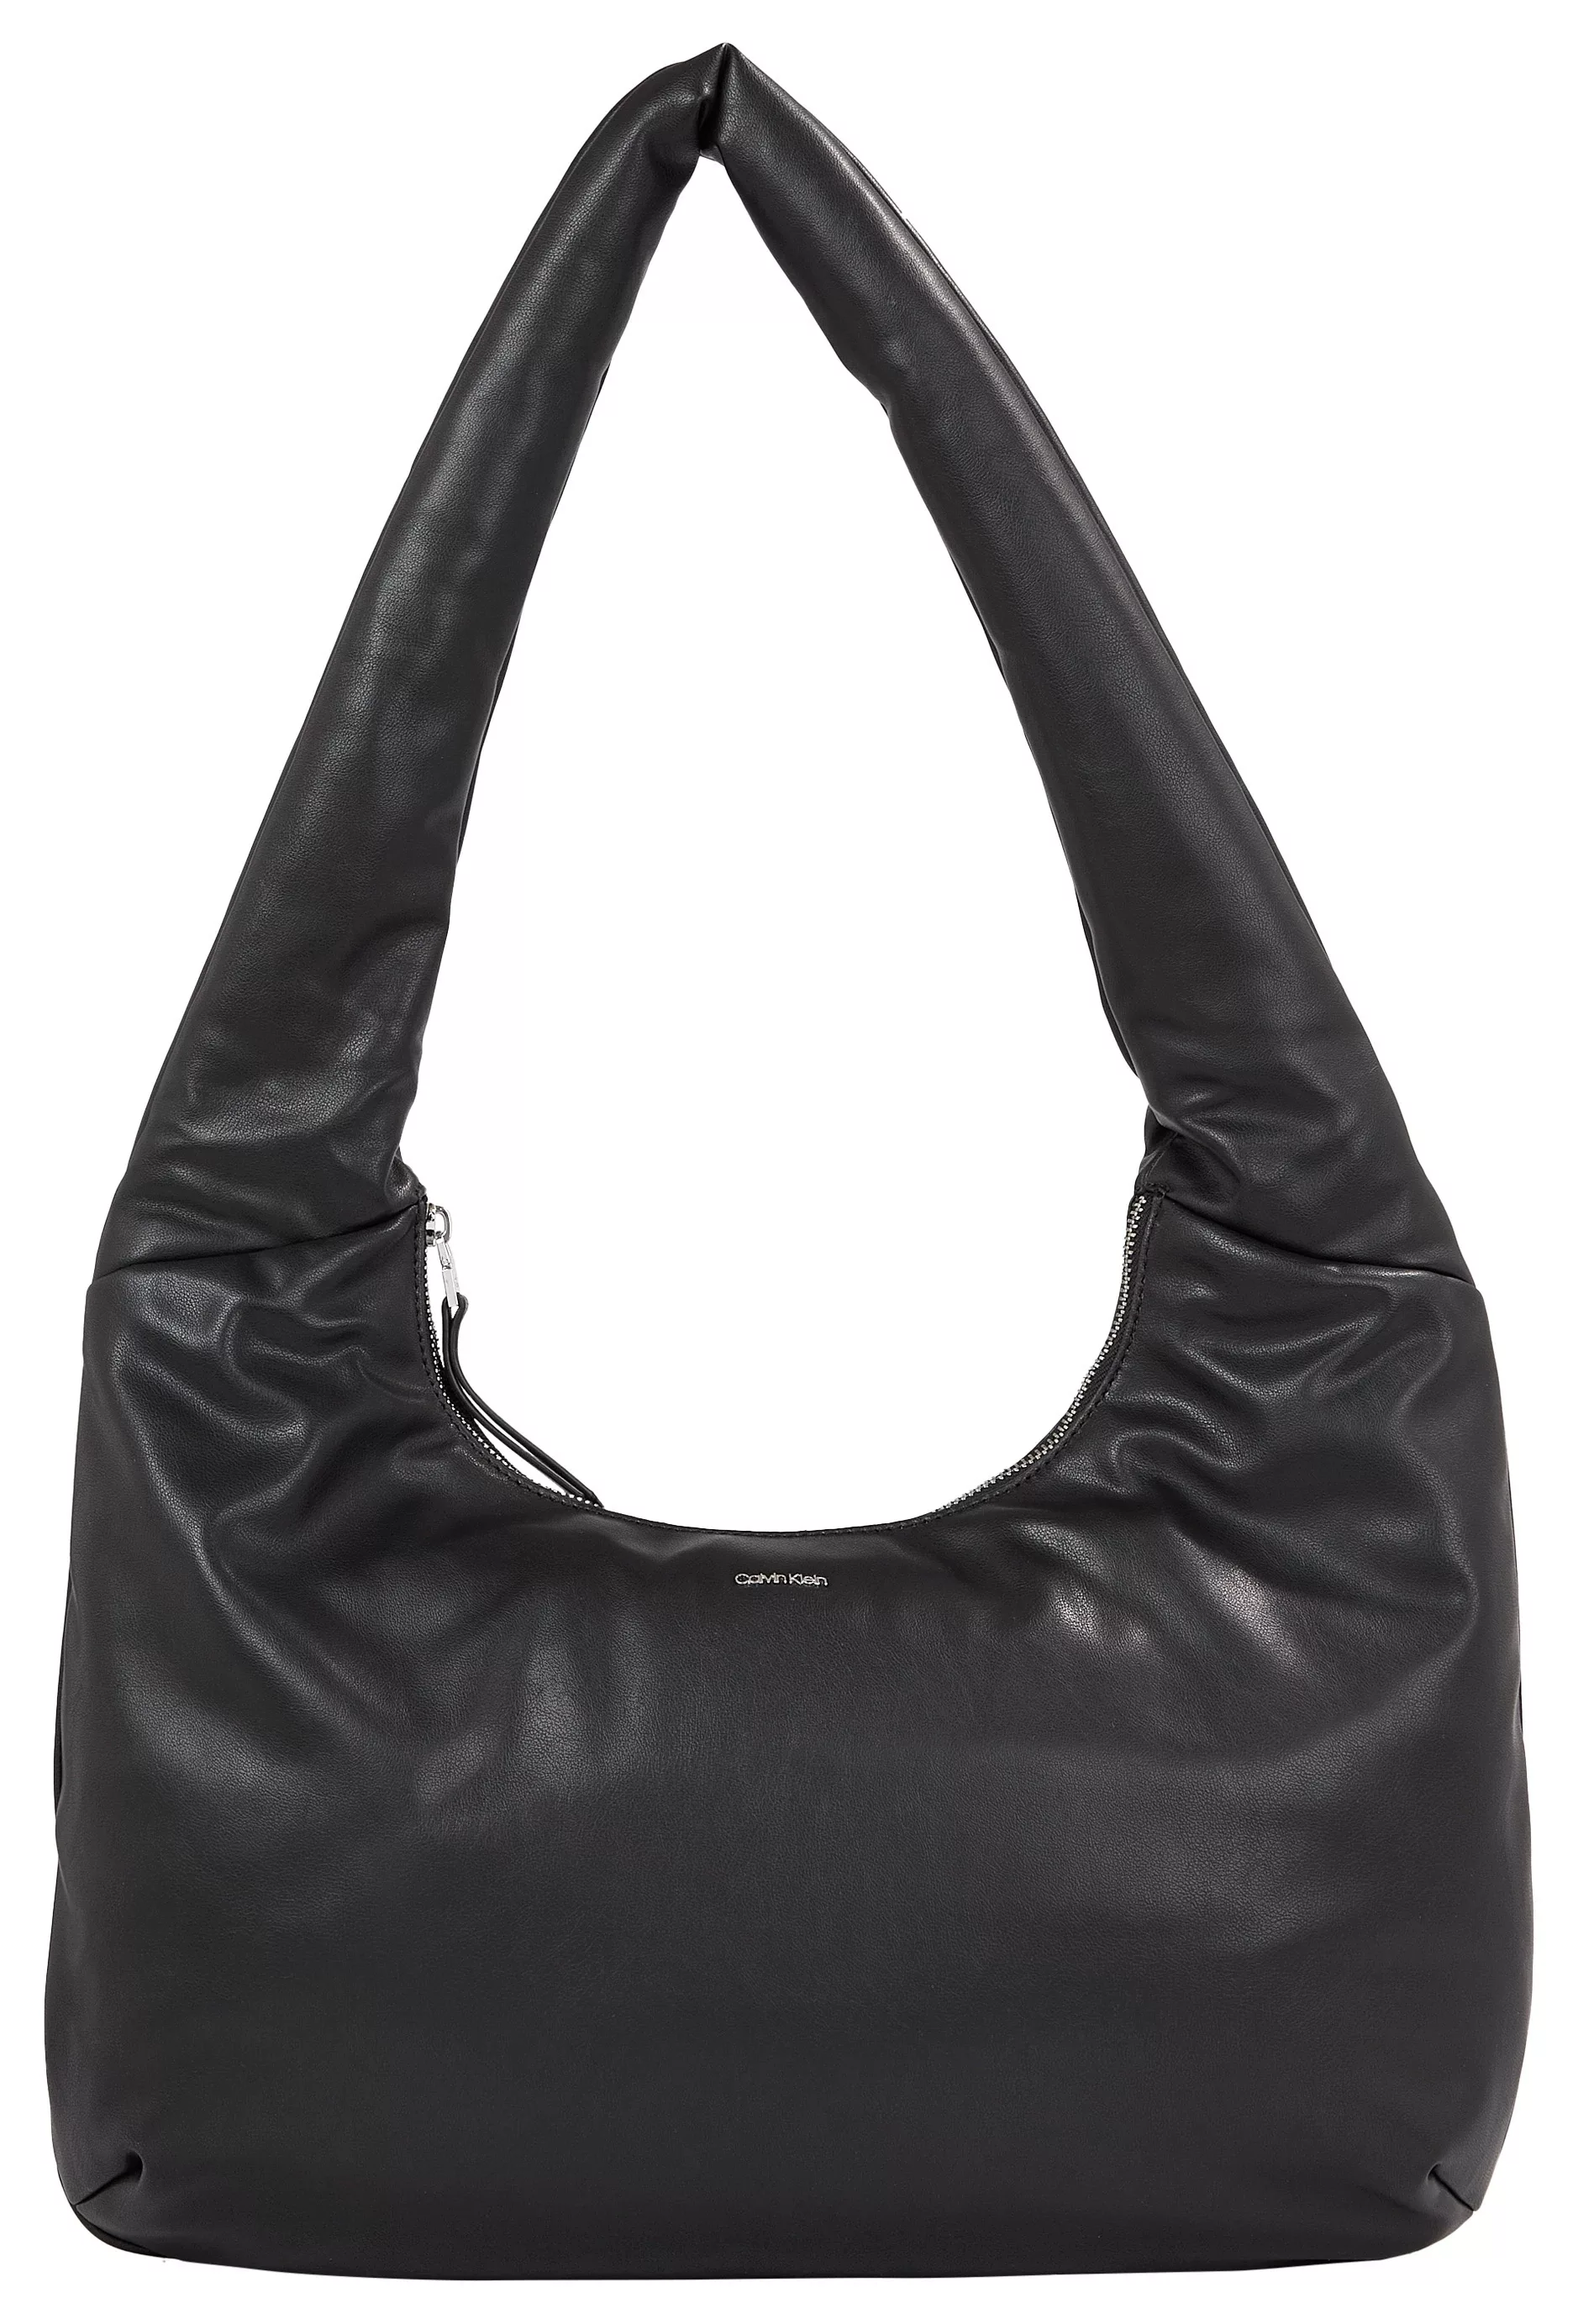 Calvin Klein Schultertasche "EMMA LARGE SHOULDER BAG", Handtasche Damen Tas günstig online kaufen